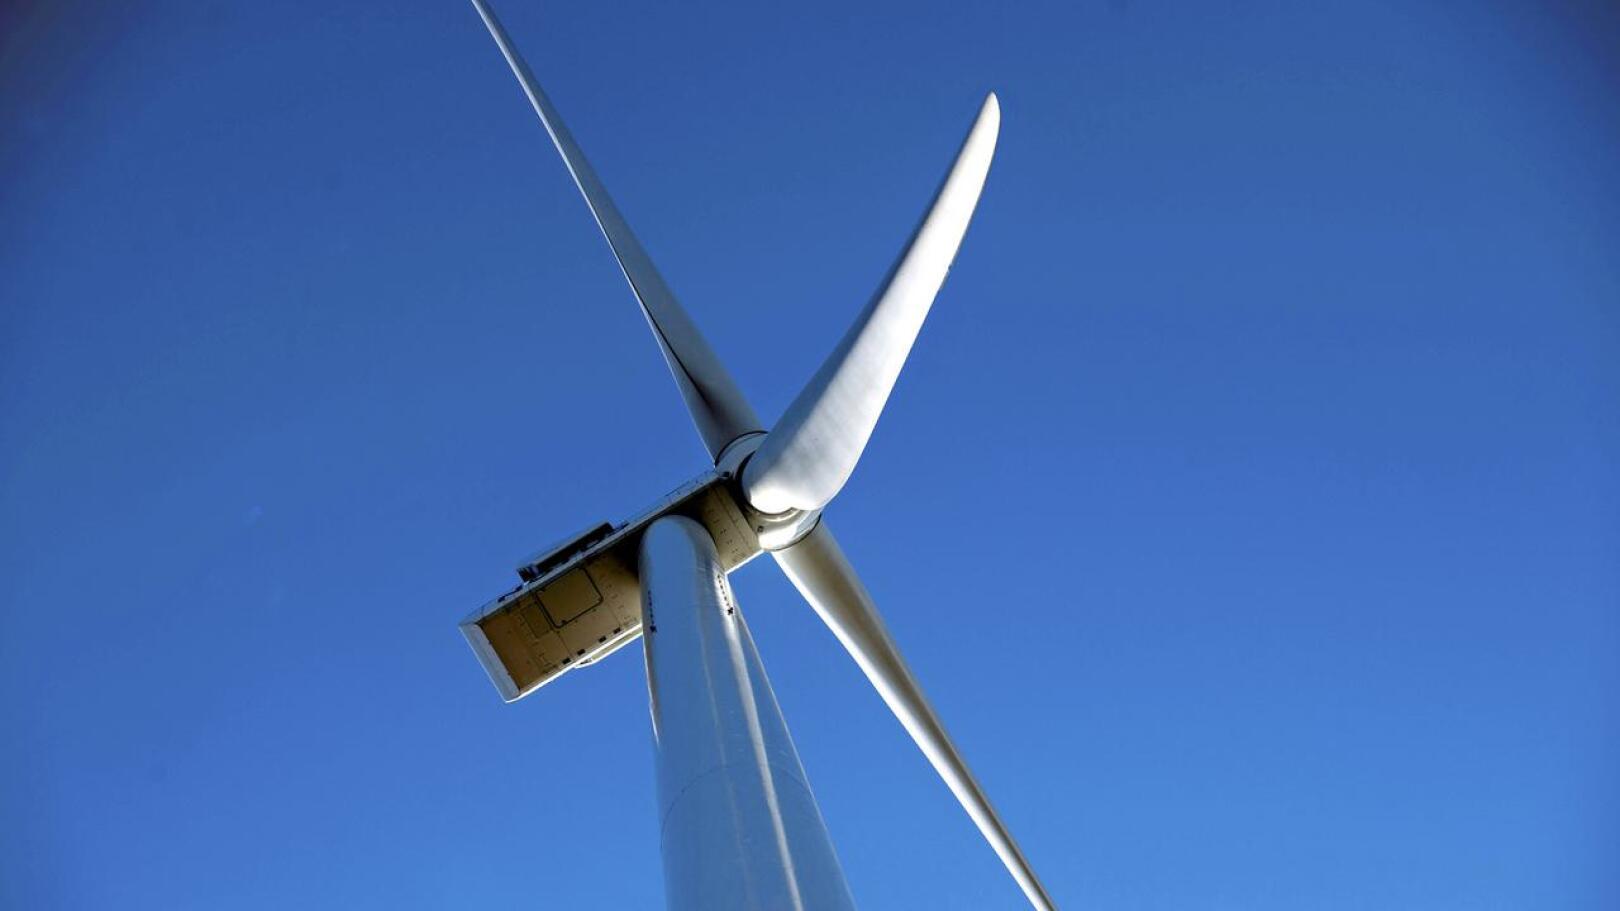 Keski-Pohjanmaalla tehdään järjestelmällistä selvitystyötä voimakkaasti kasvavan tuulivoima-alan työvoimatarpeista.